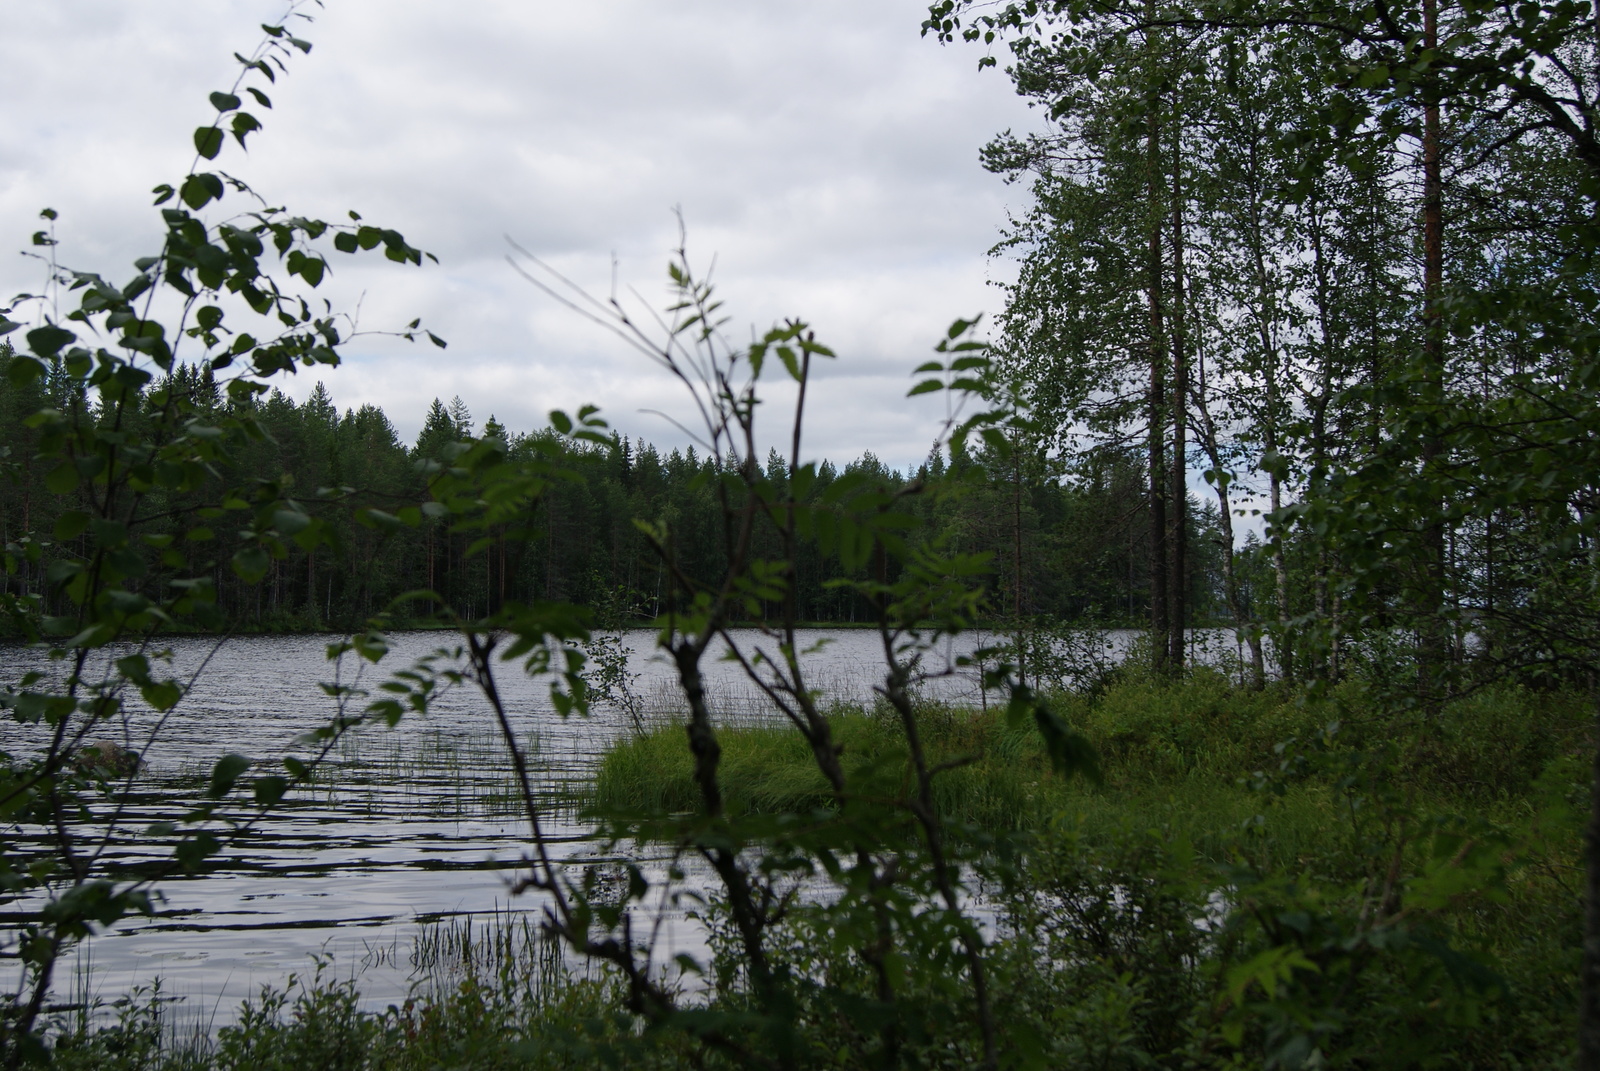 Kesäinen sekametsä reunustaa järveä. Etualalla on pihlajan ja koivun oksia.